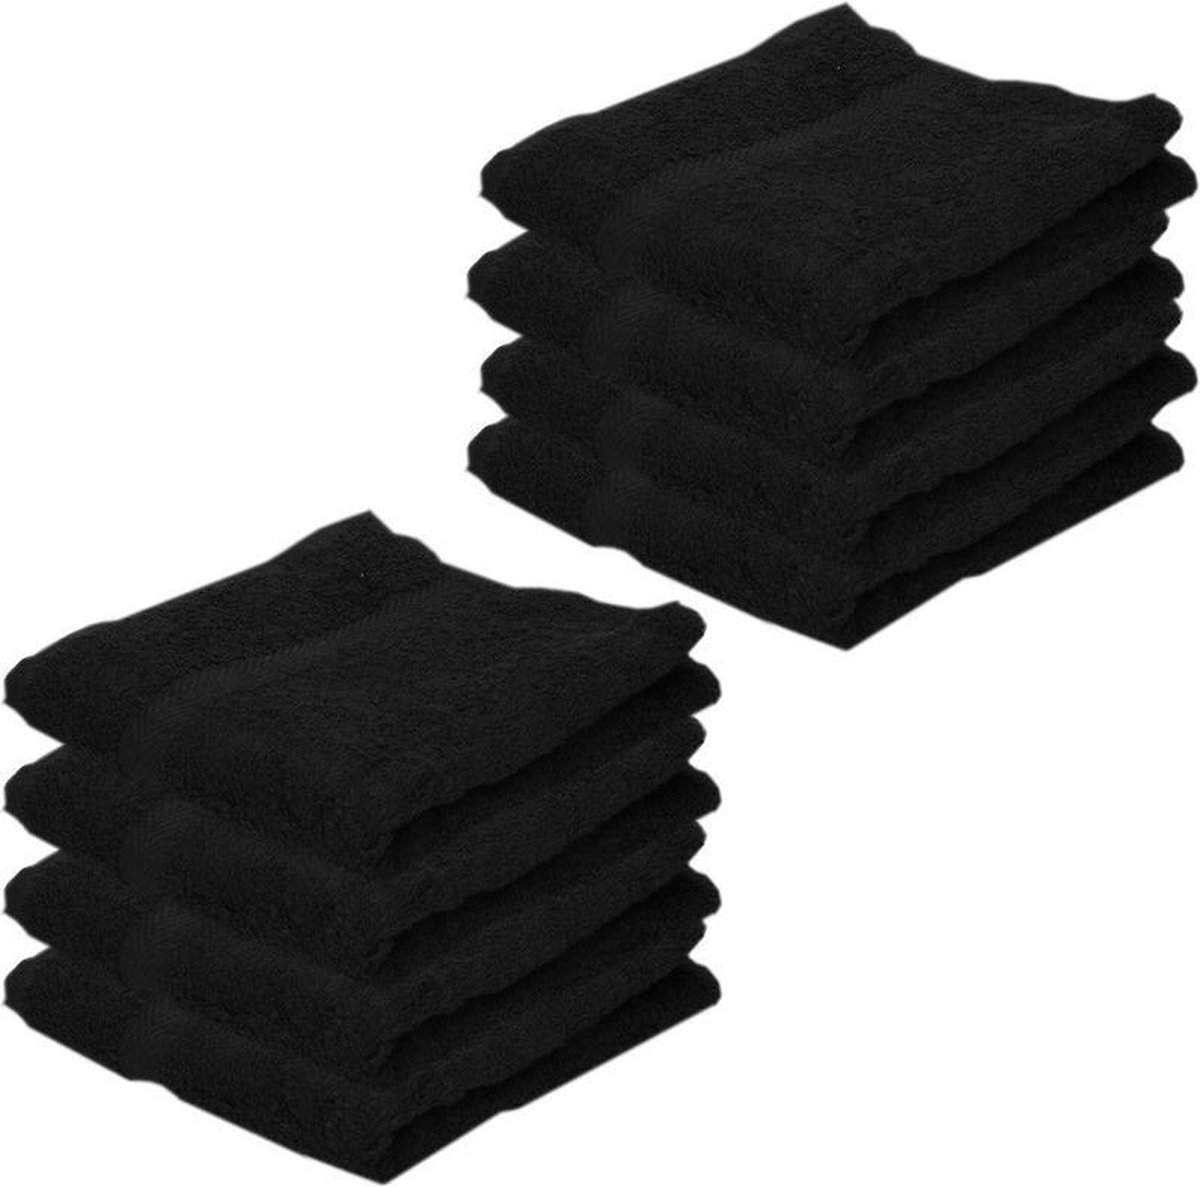 8x Voordelige handdoeken zwart 50 x 100 cm 420 grams - Badkamer textiel badhanddoeken